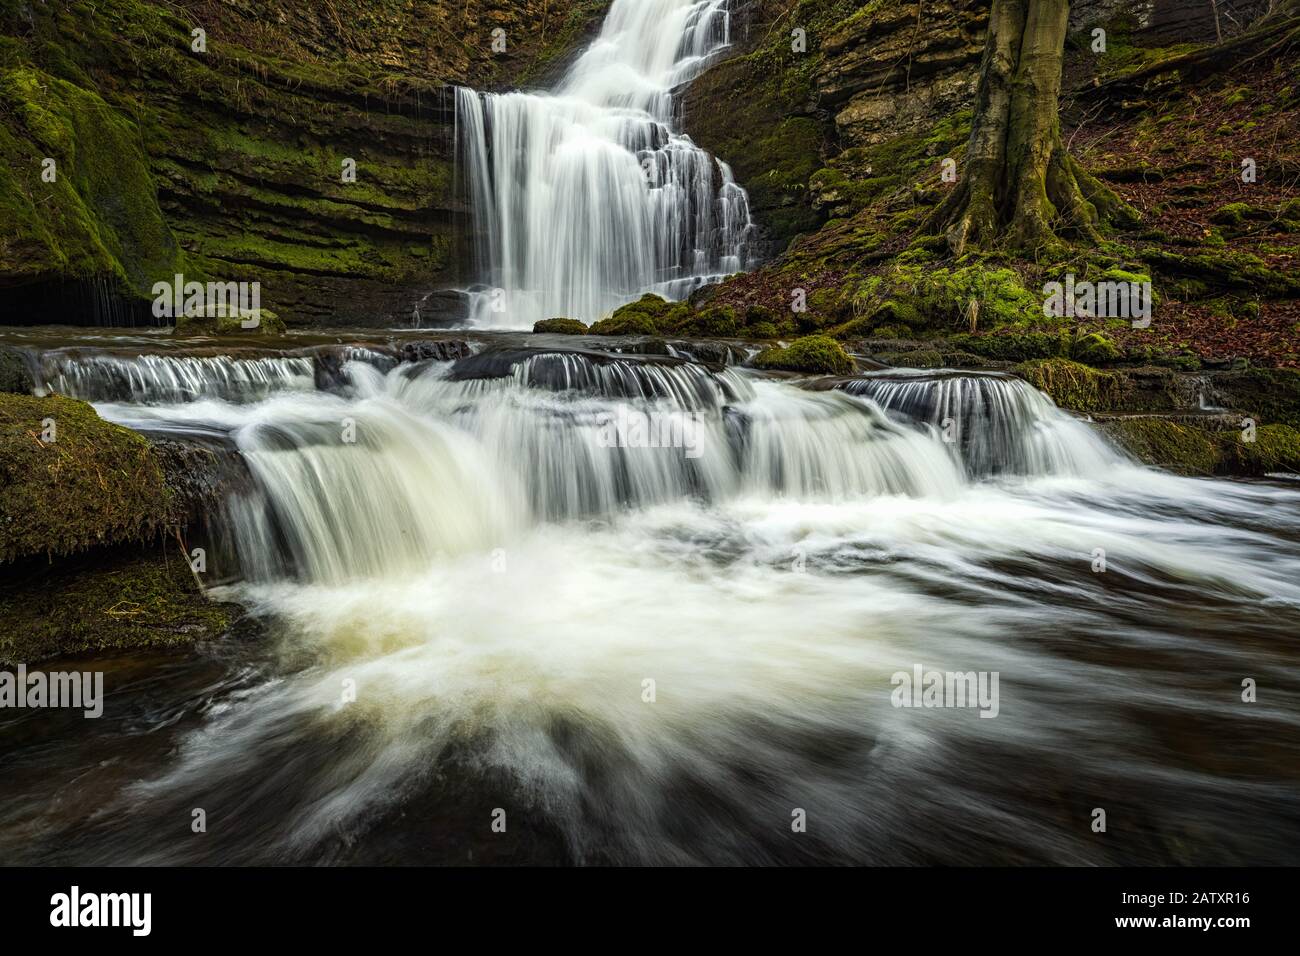 Scaleber Force Waterfall Cerca De Establecerse En El Parque Nacional Yorkshire Dales, Reino Unido Foto de stock